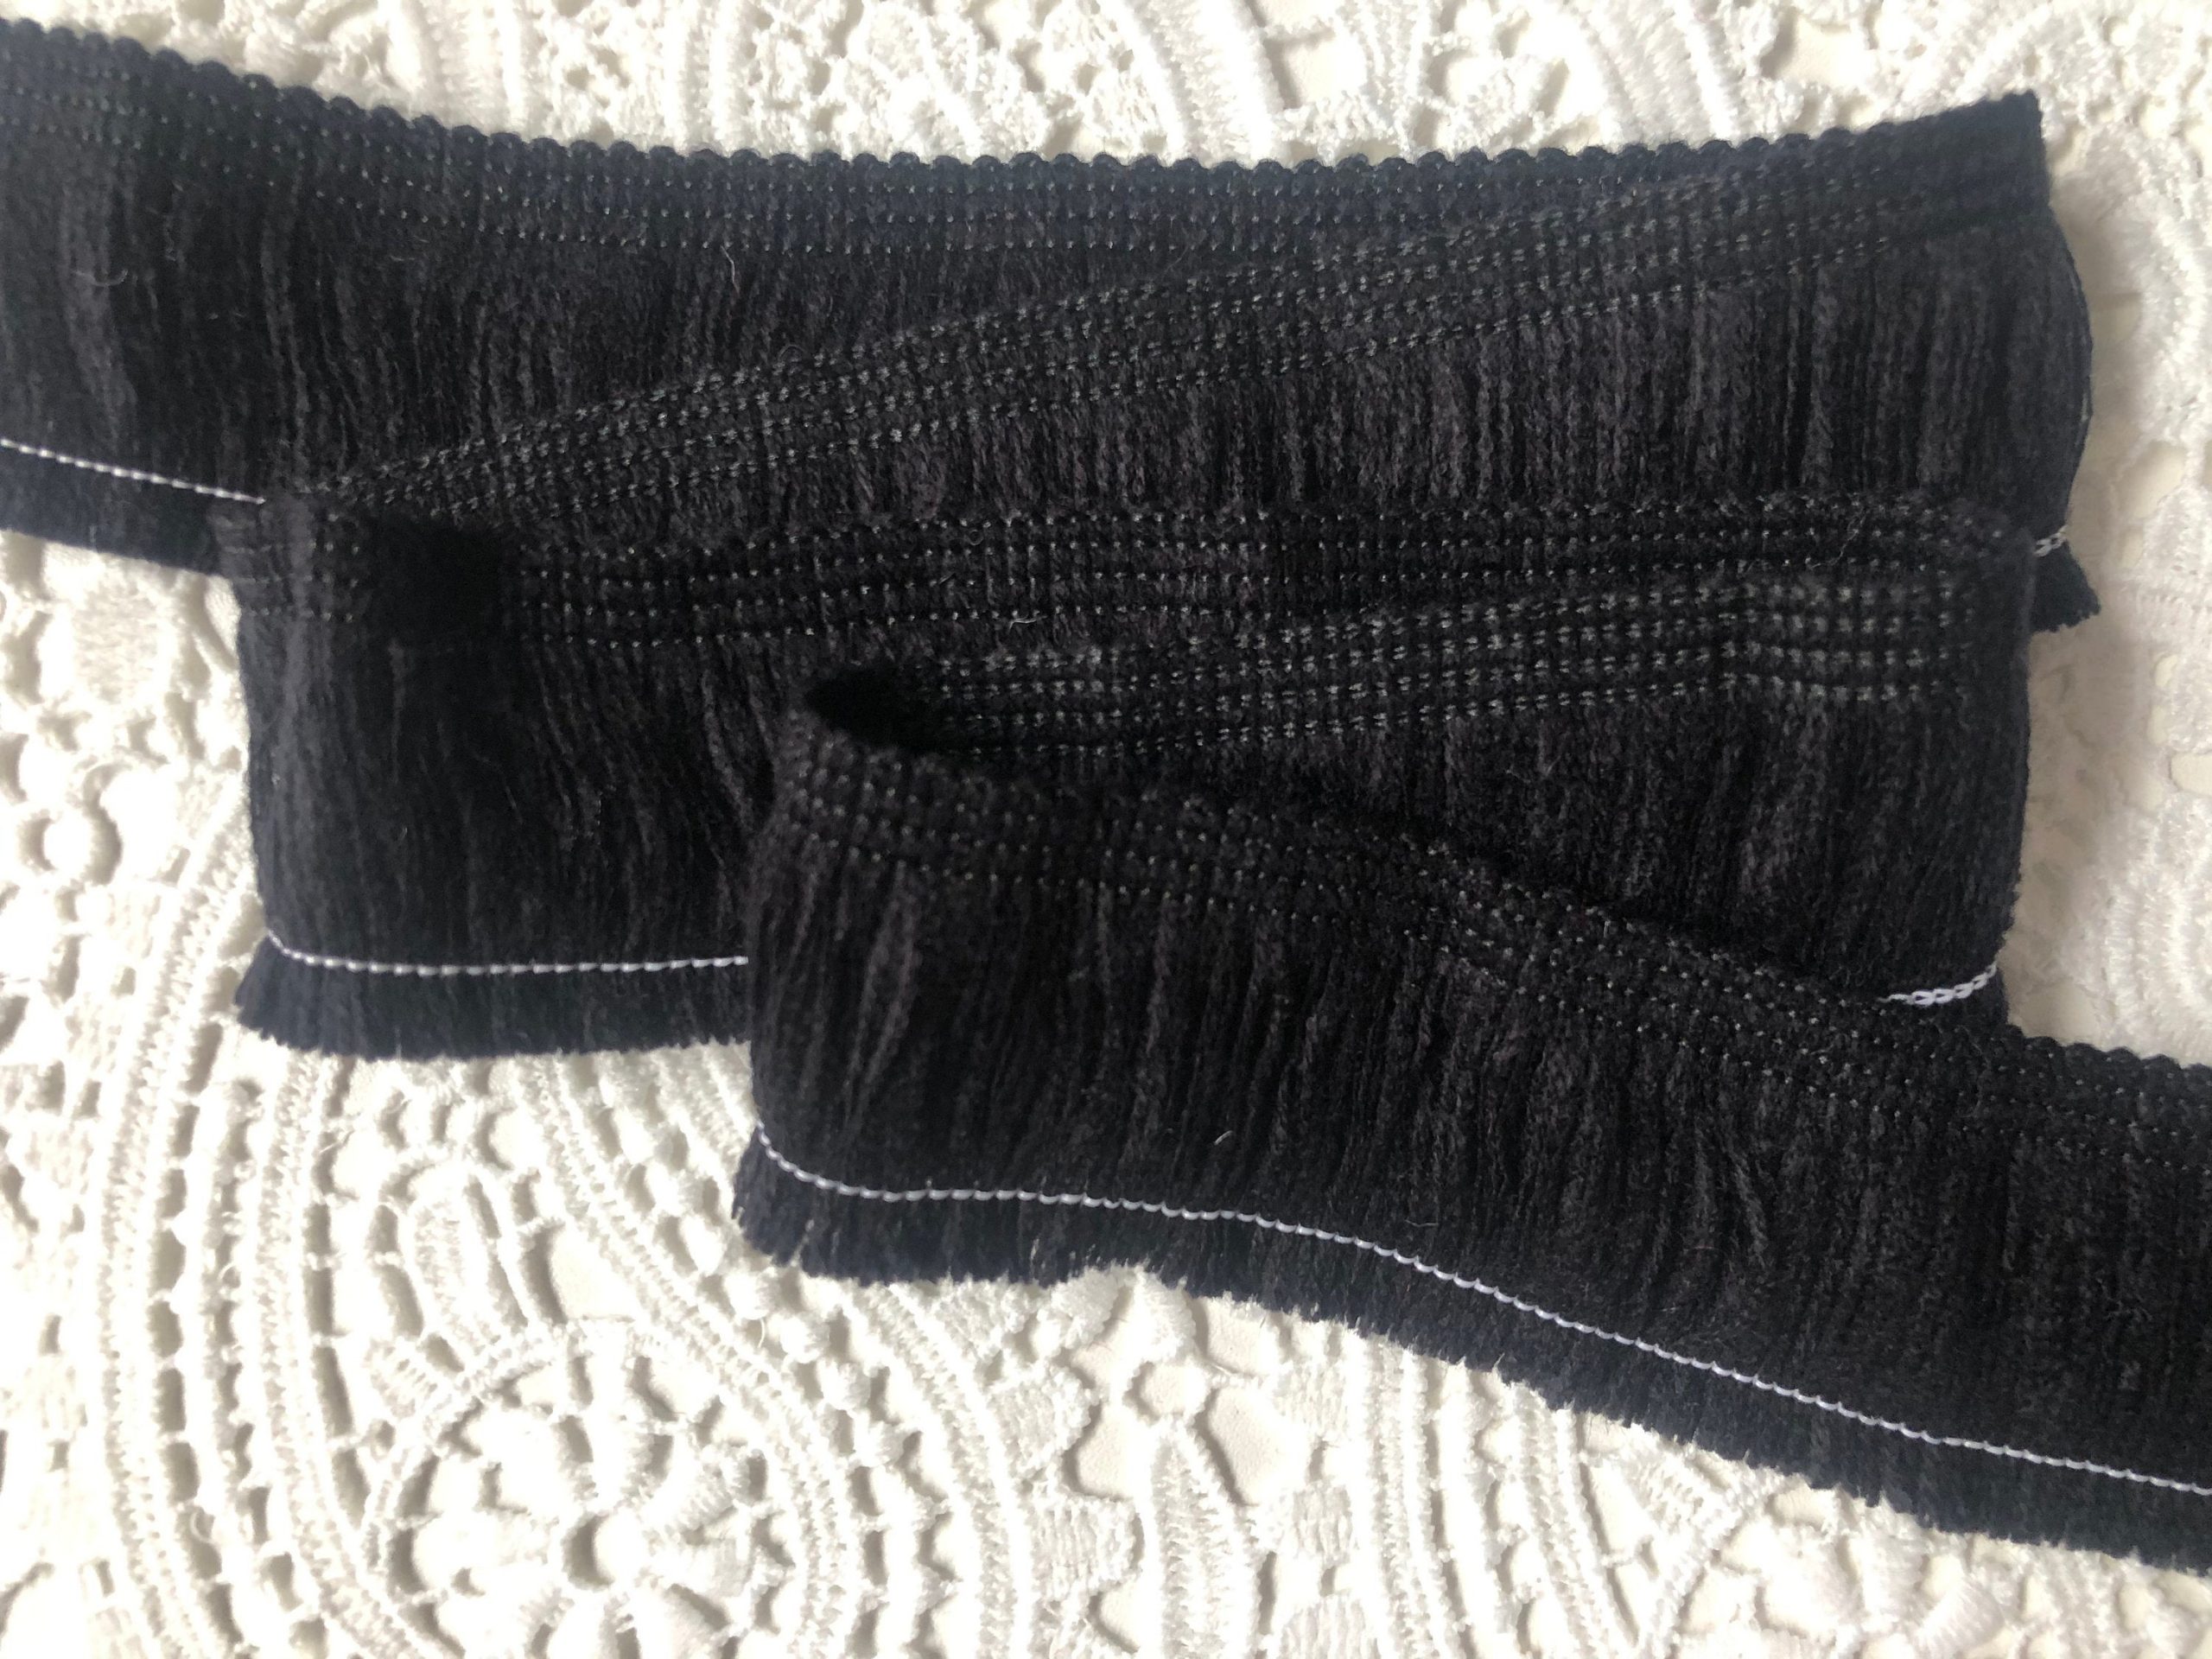 2 Yards 4 Inch PU Leather Fringe Trim DIY Tassel Fringe for Sewing, Black